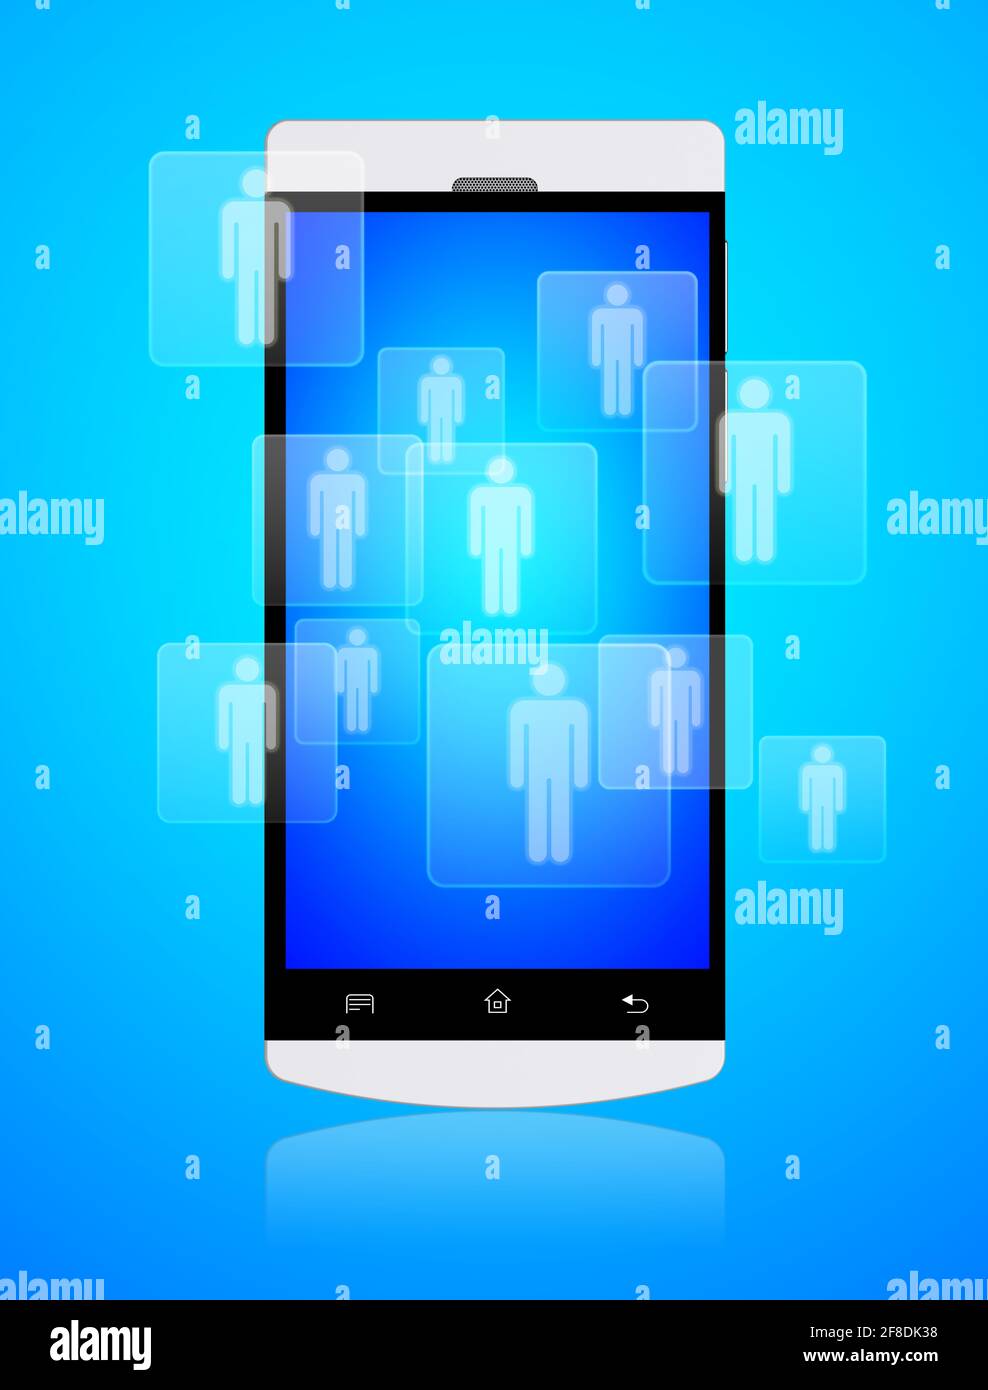 Smartphone móvil con aplicación de redes sociales en una pantalla. Concepto de comunicación y tecnología de los medios de comunicación Foto de stock